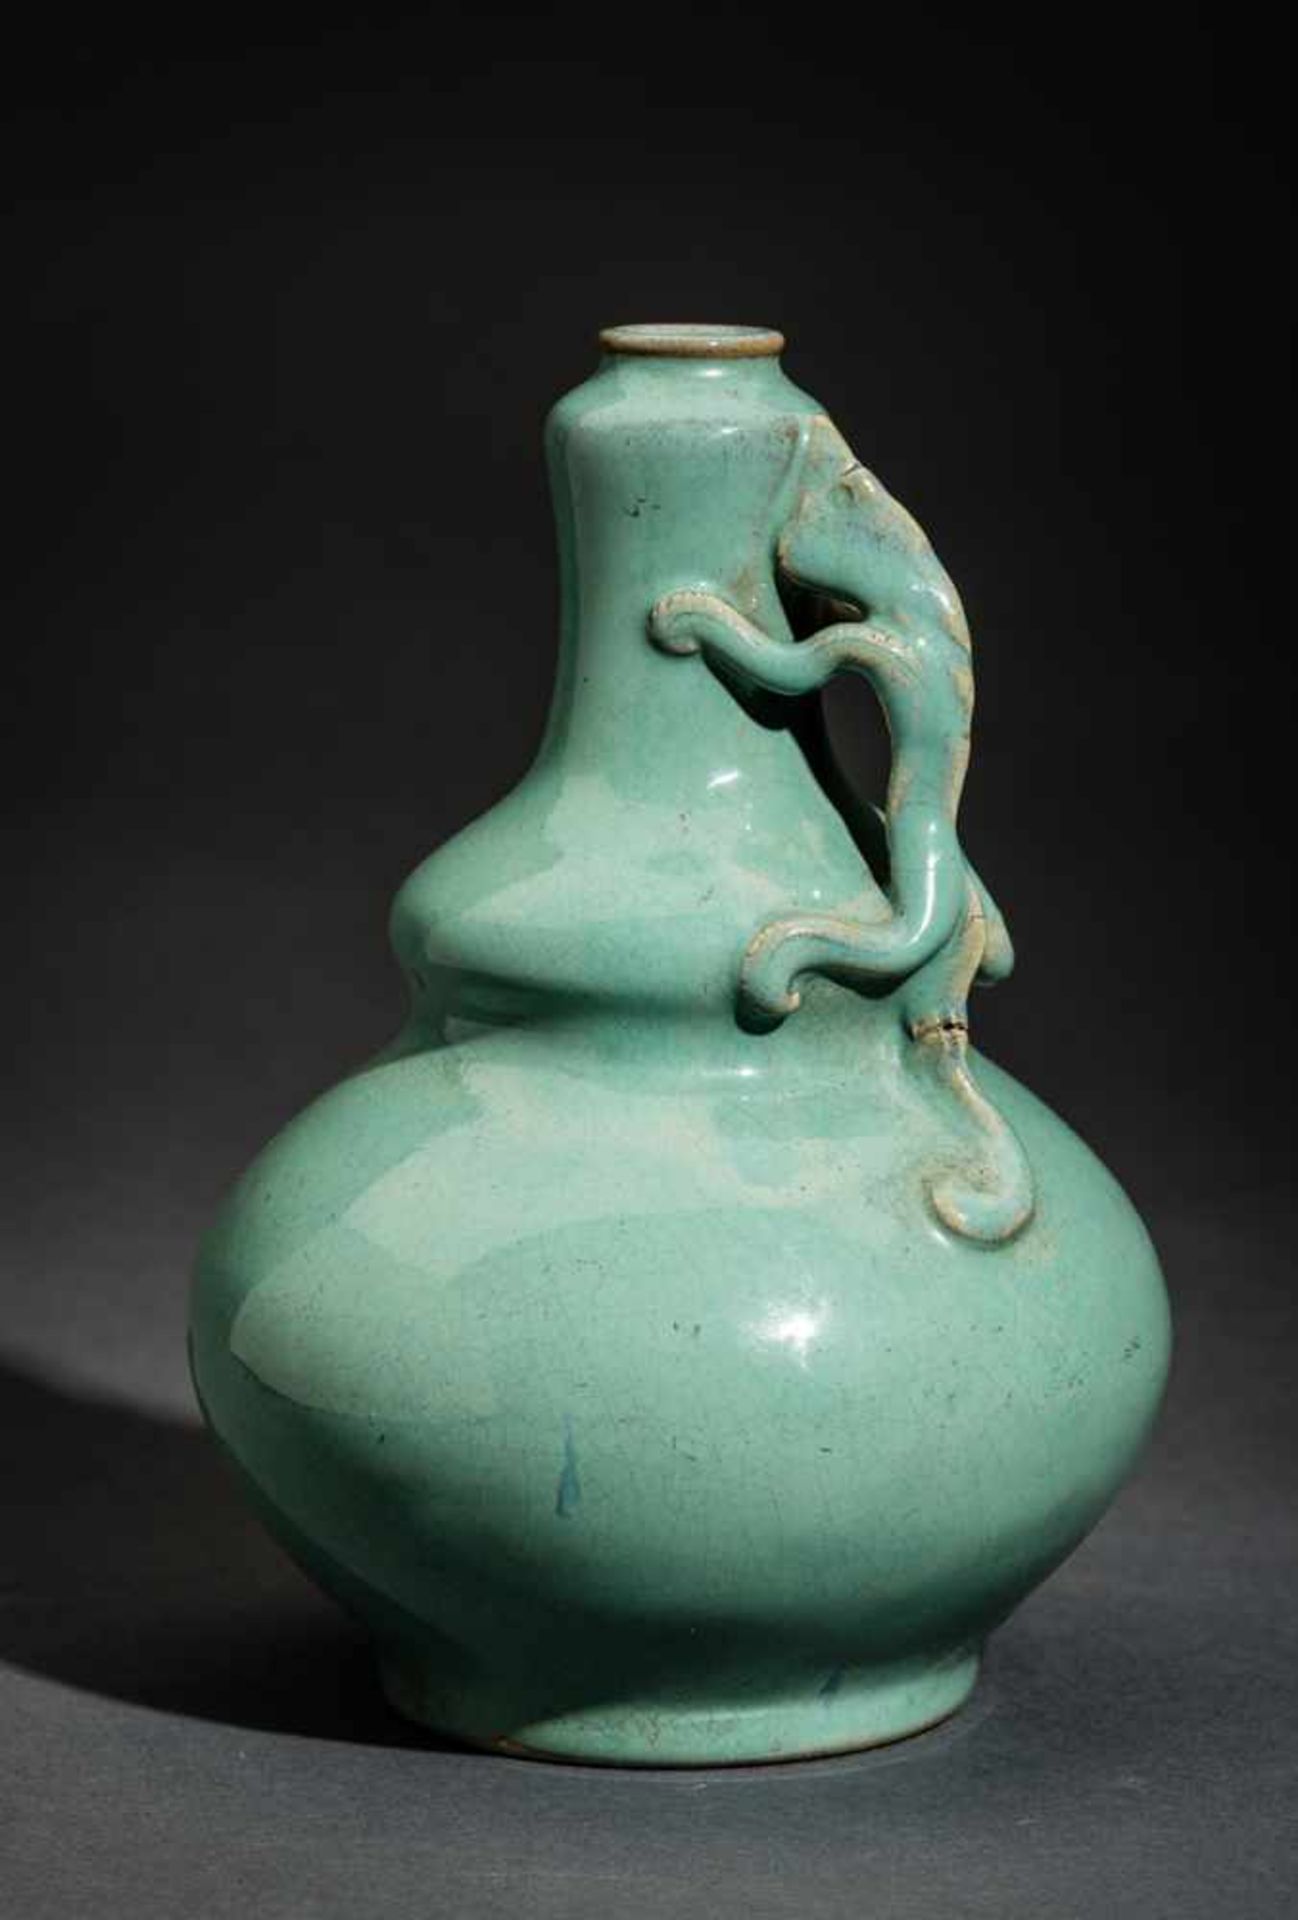 VASE MIT DRACHENGRIFF Glasierte Keramik, China. ca. spätes Qing (1644-1911) bis danachLichtgrün - Bild 3 aus 5